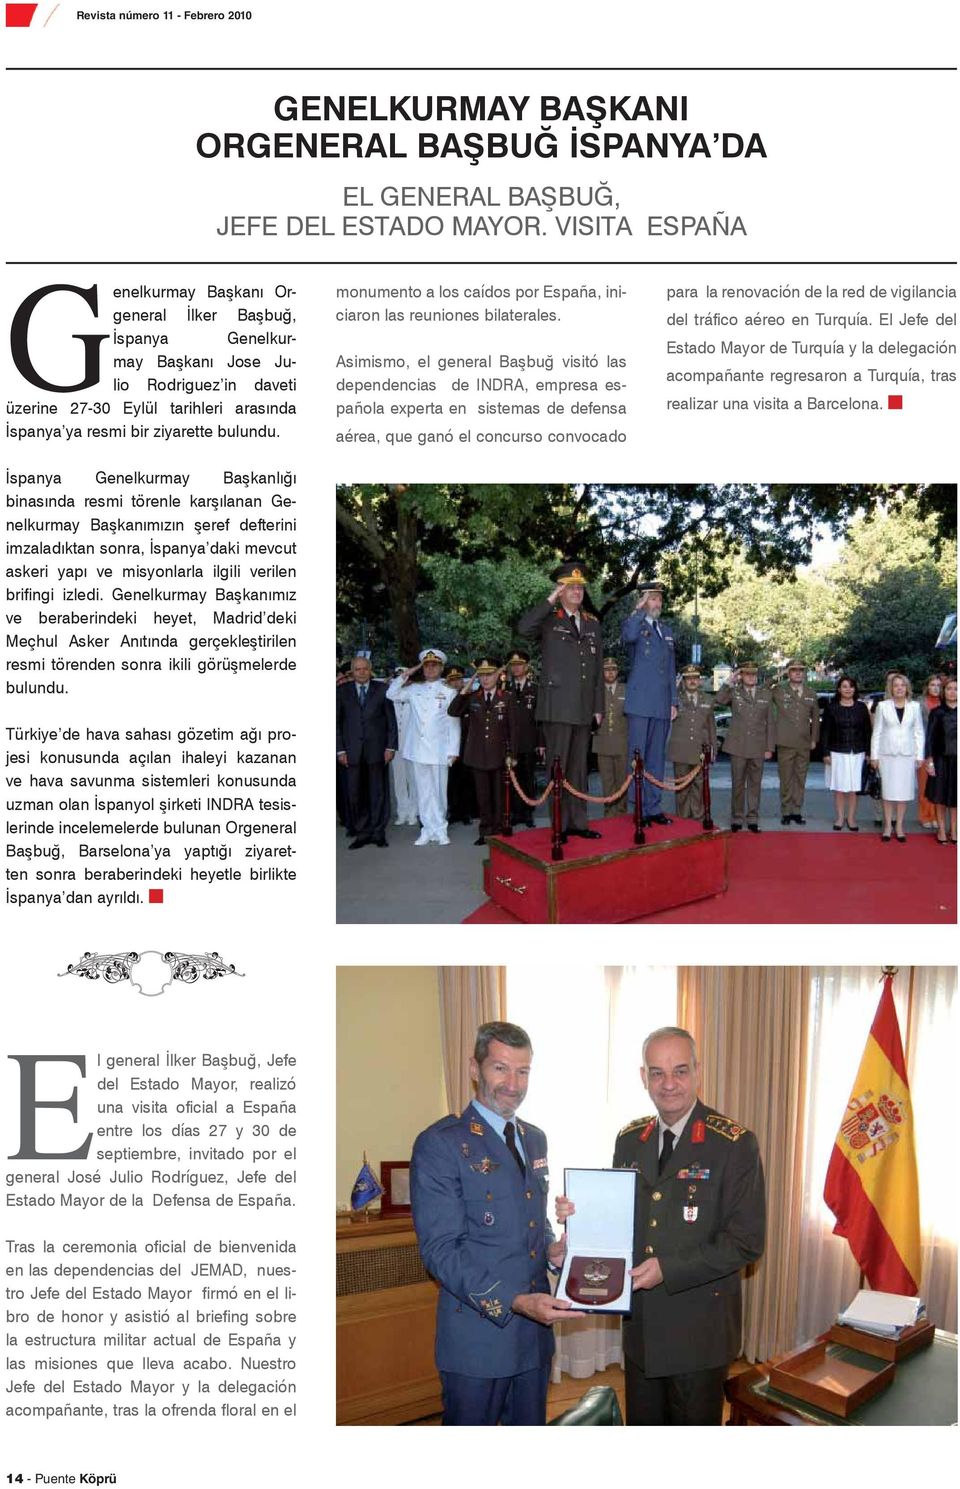 İspanya Genelkurmay Başkanlığı binasında resmi törenle karşılanan Genelkurmay Başkanımızın şeref defterini imzaladıktan sonra, İspanya daki mevcut askeri yapı ve misyonlarla ilgili verilen brifingi